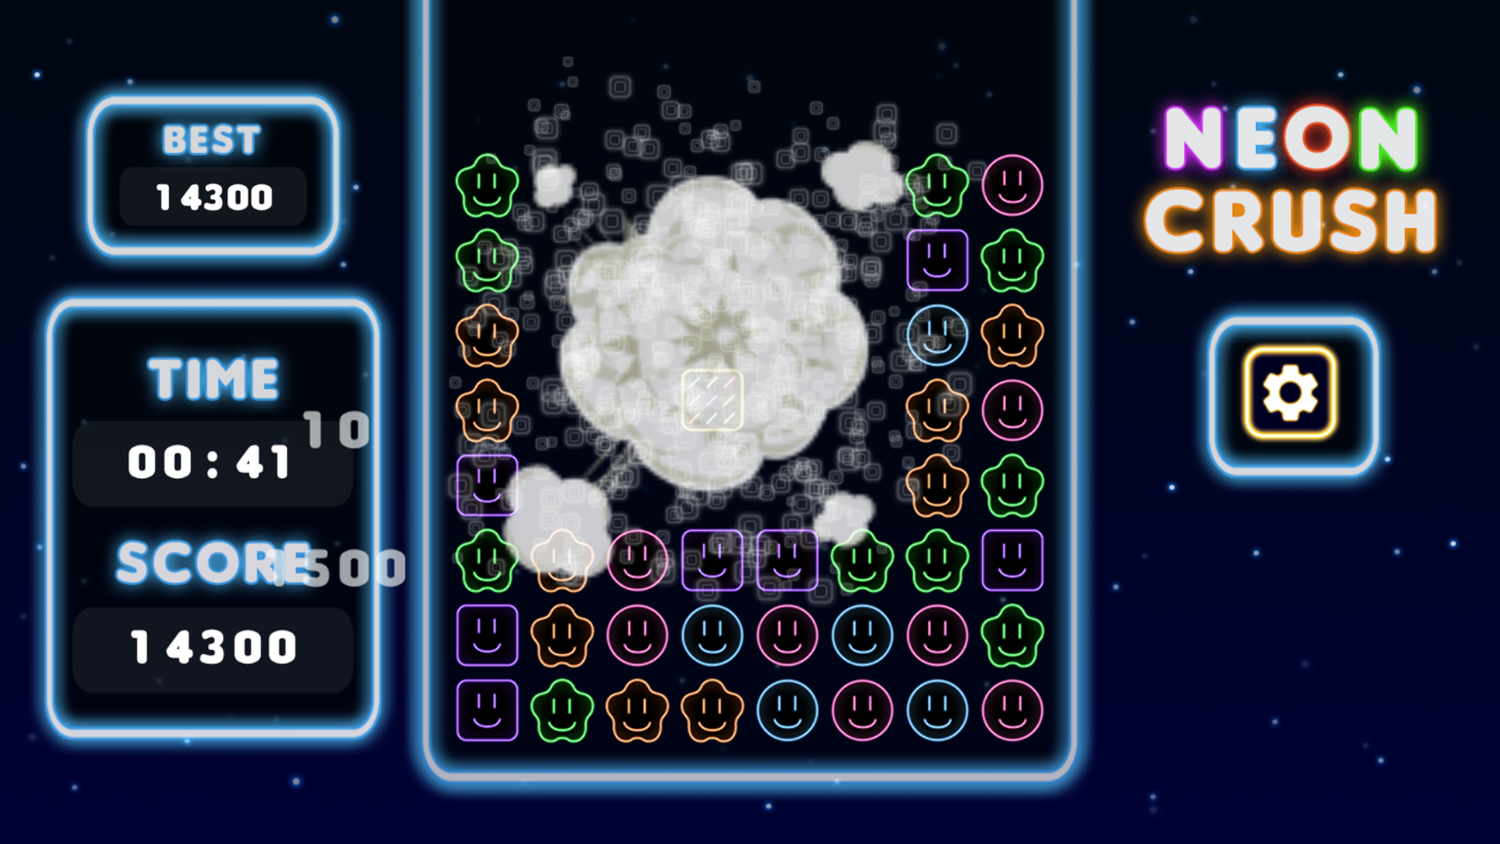 Neon Crush Game Play Screenshot.